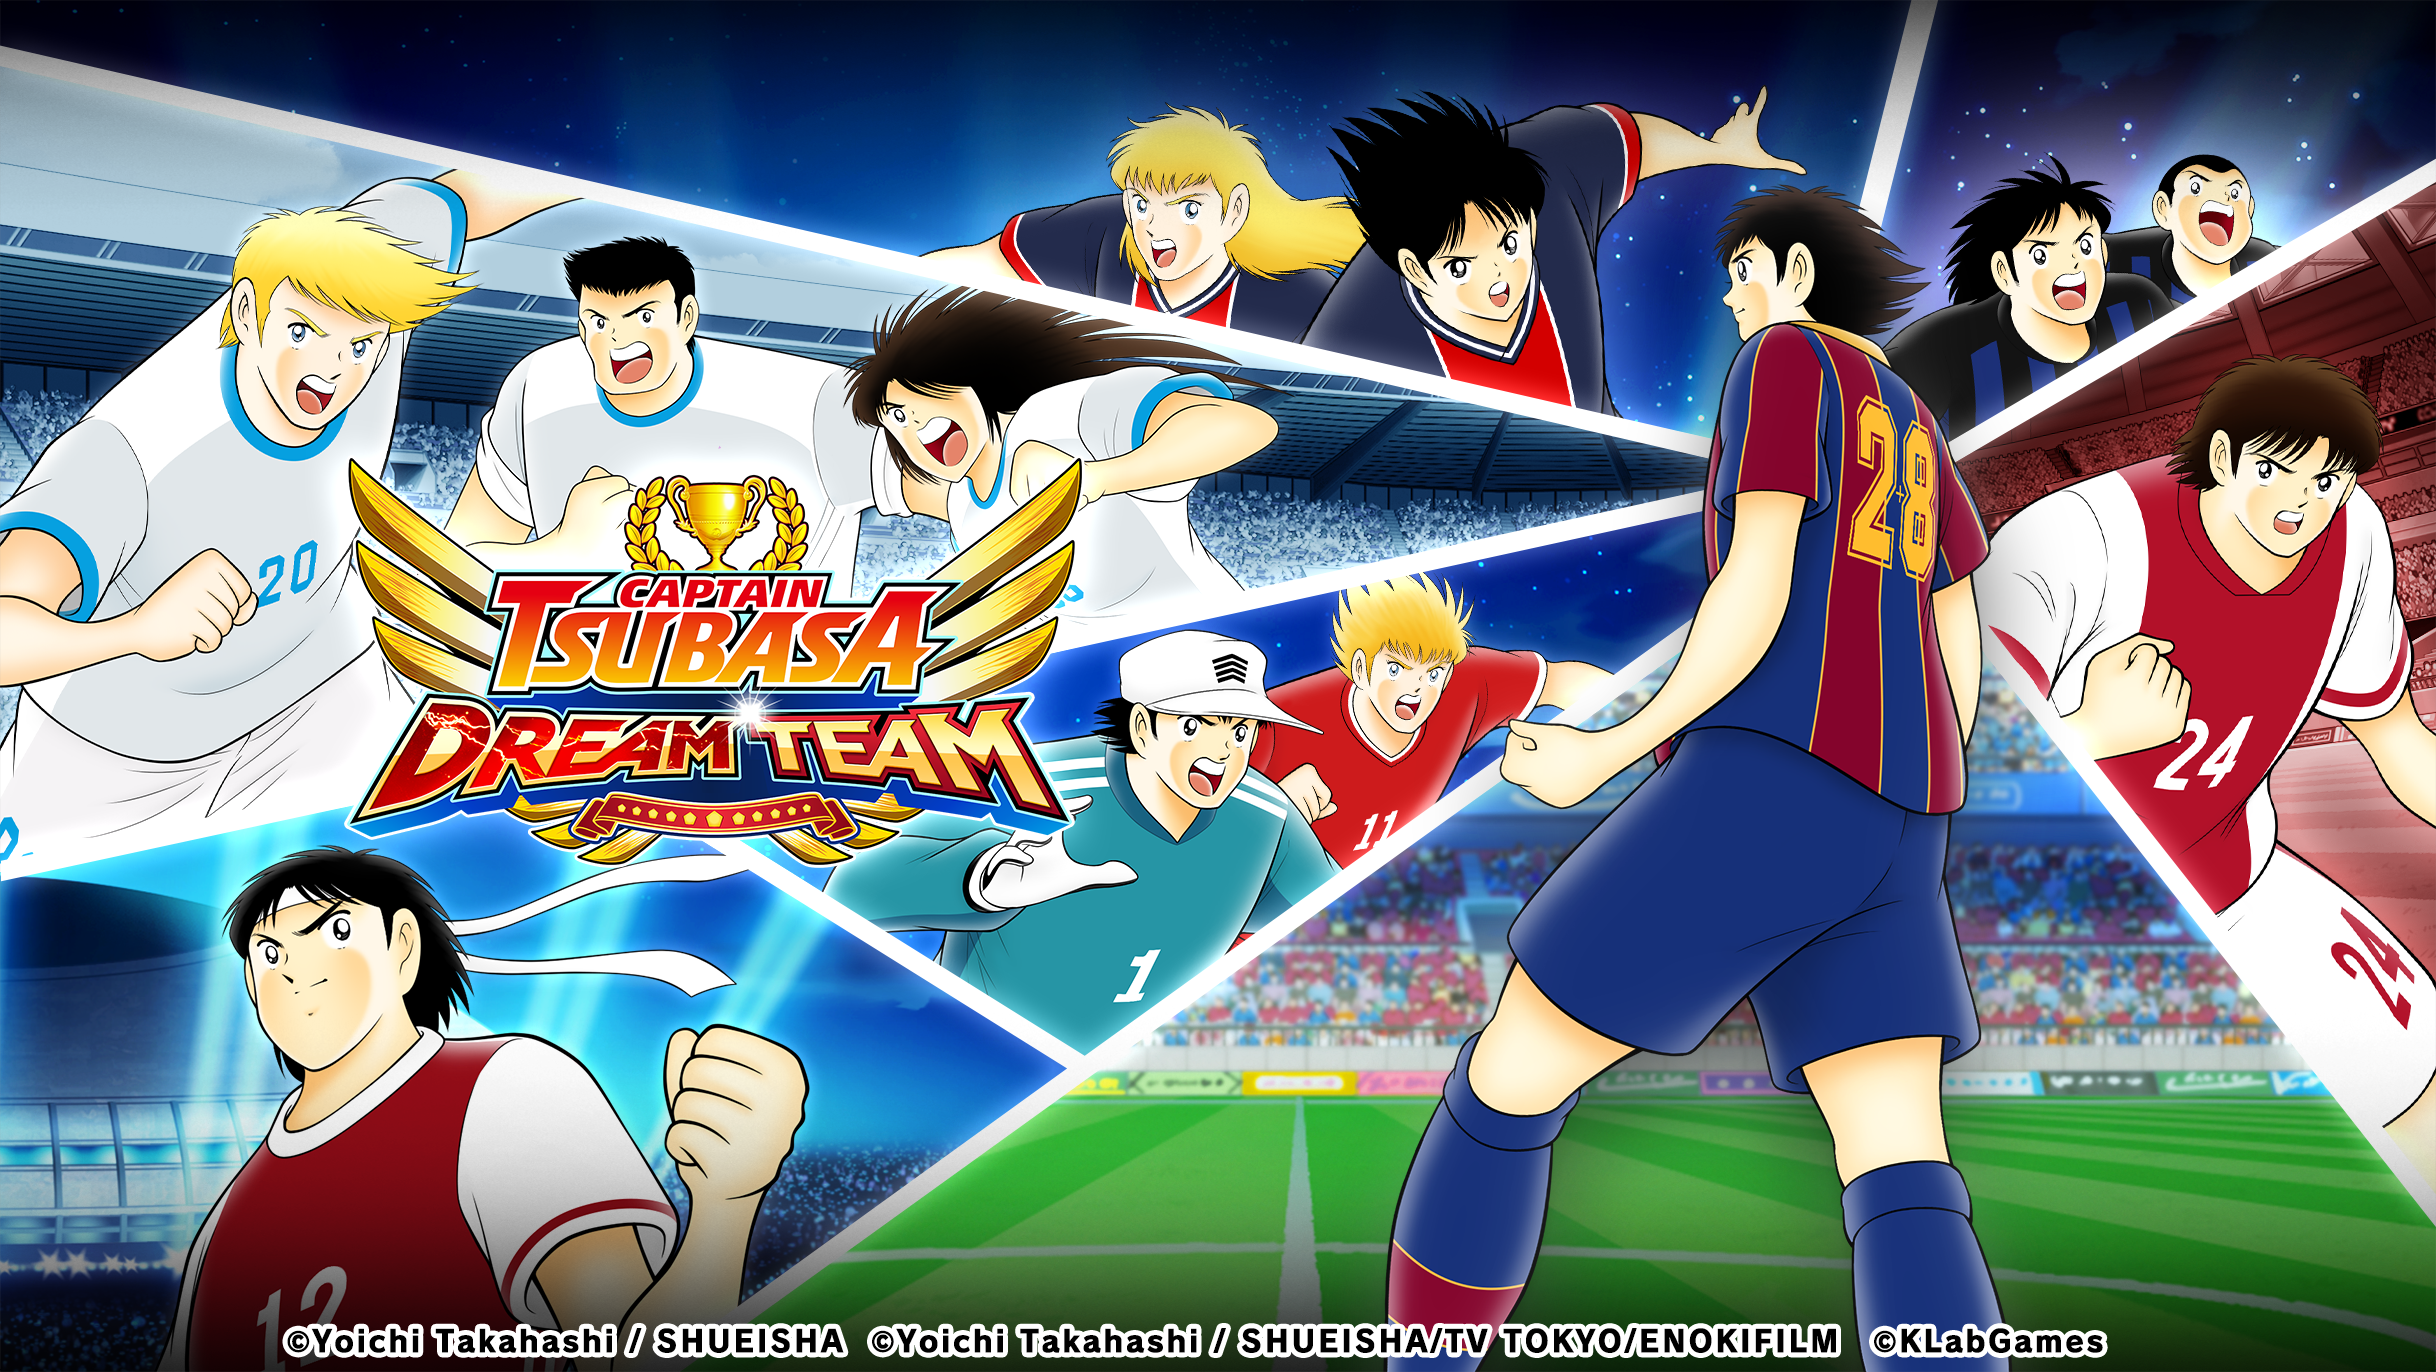 เกม "กัปตันซึบาสะ: ดรีมทีม (Captain Tsubasa: Dream Team)" เปิดตัวระบบการจัดอันดับผู้เล่นแบบใหม่ขึ้น